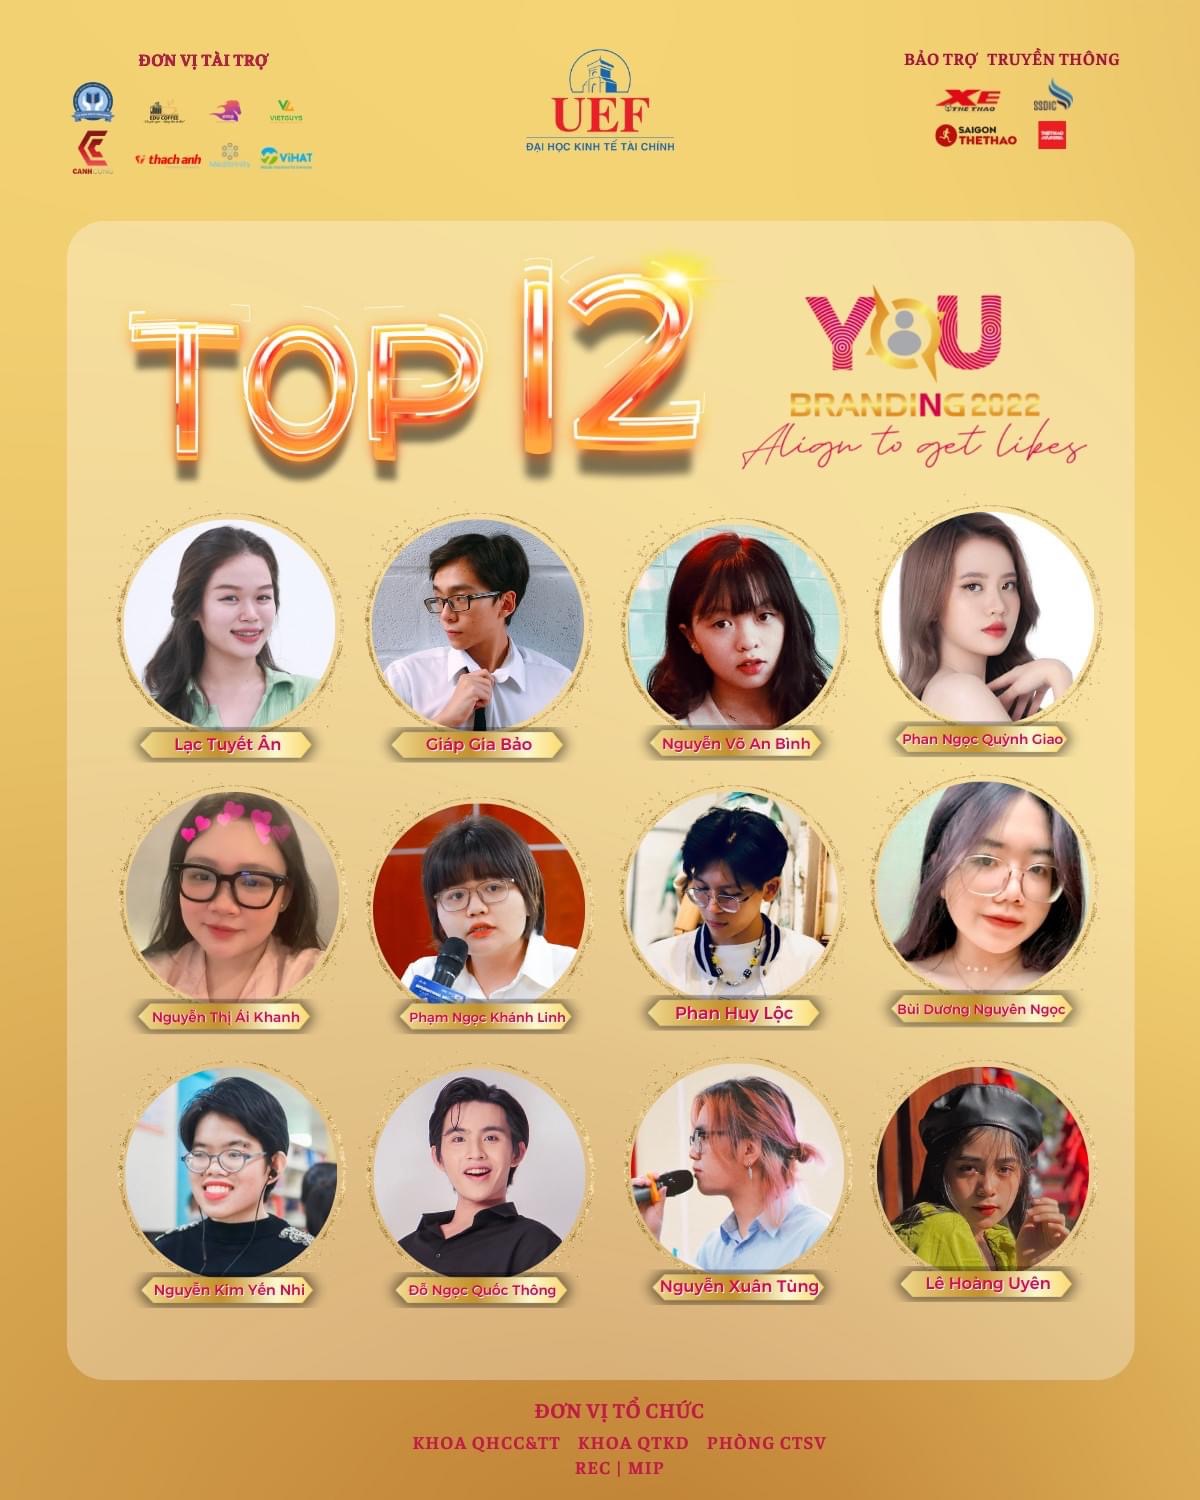 Top 12 thí sinh xuất sắc nhất lọt vào vòng chung kết cuộc thi YouBranding 2022https://www.w3.org/WAI/tutorials/images/decision-tree